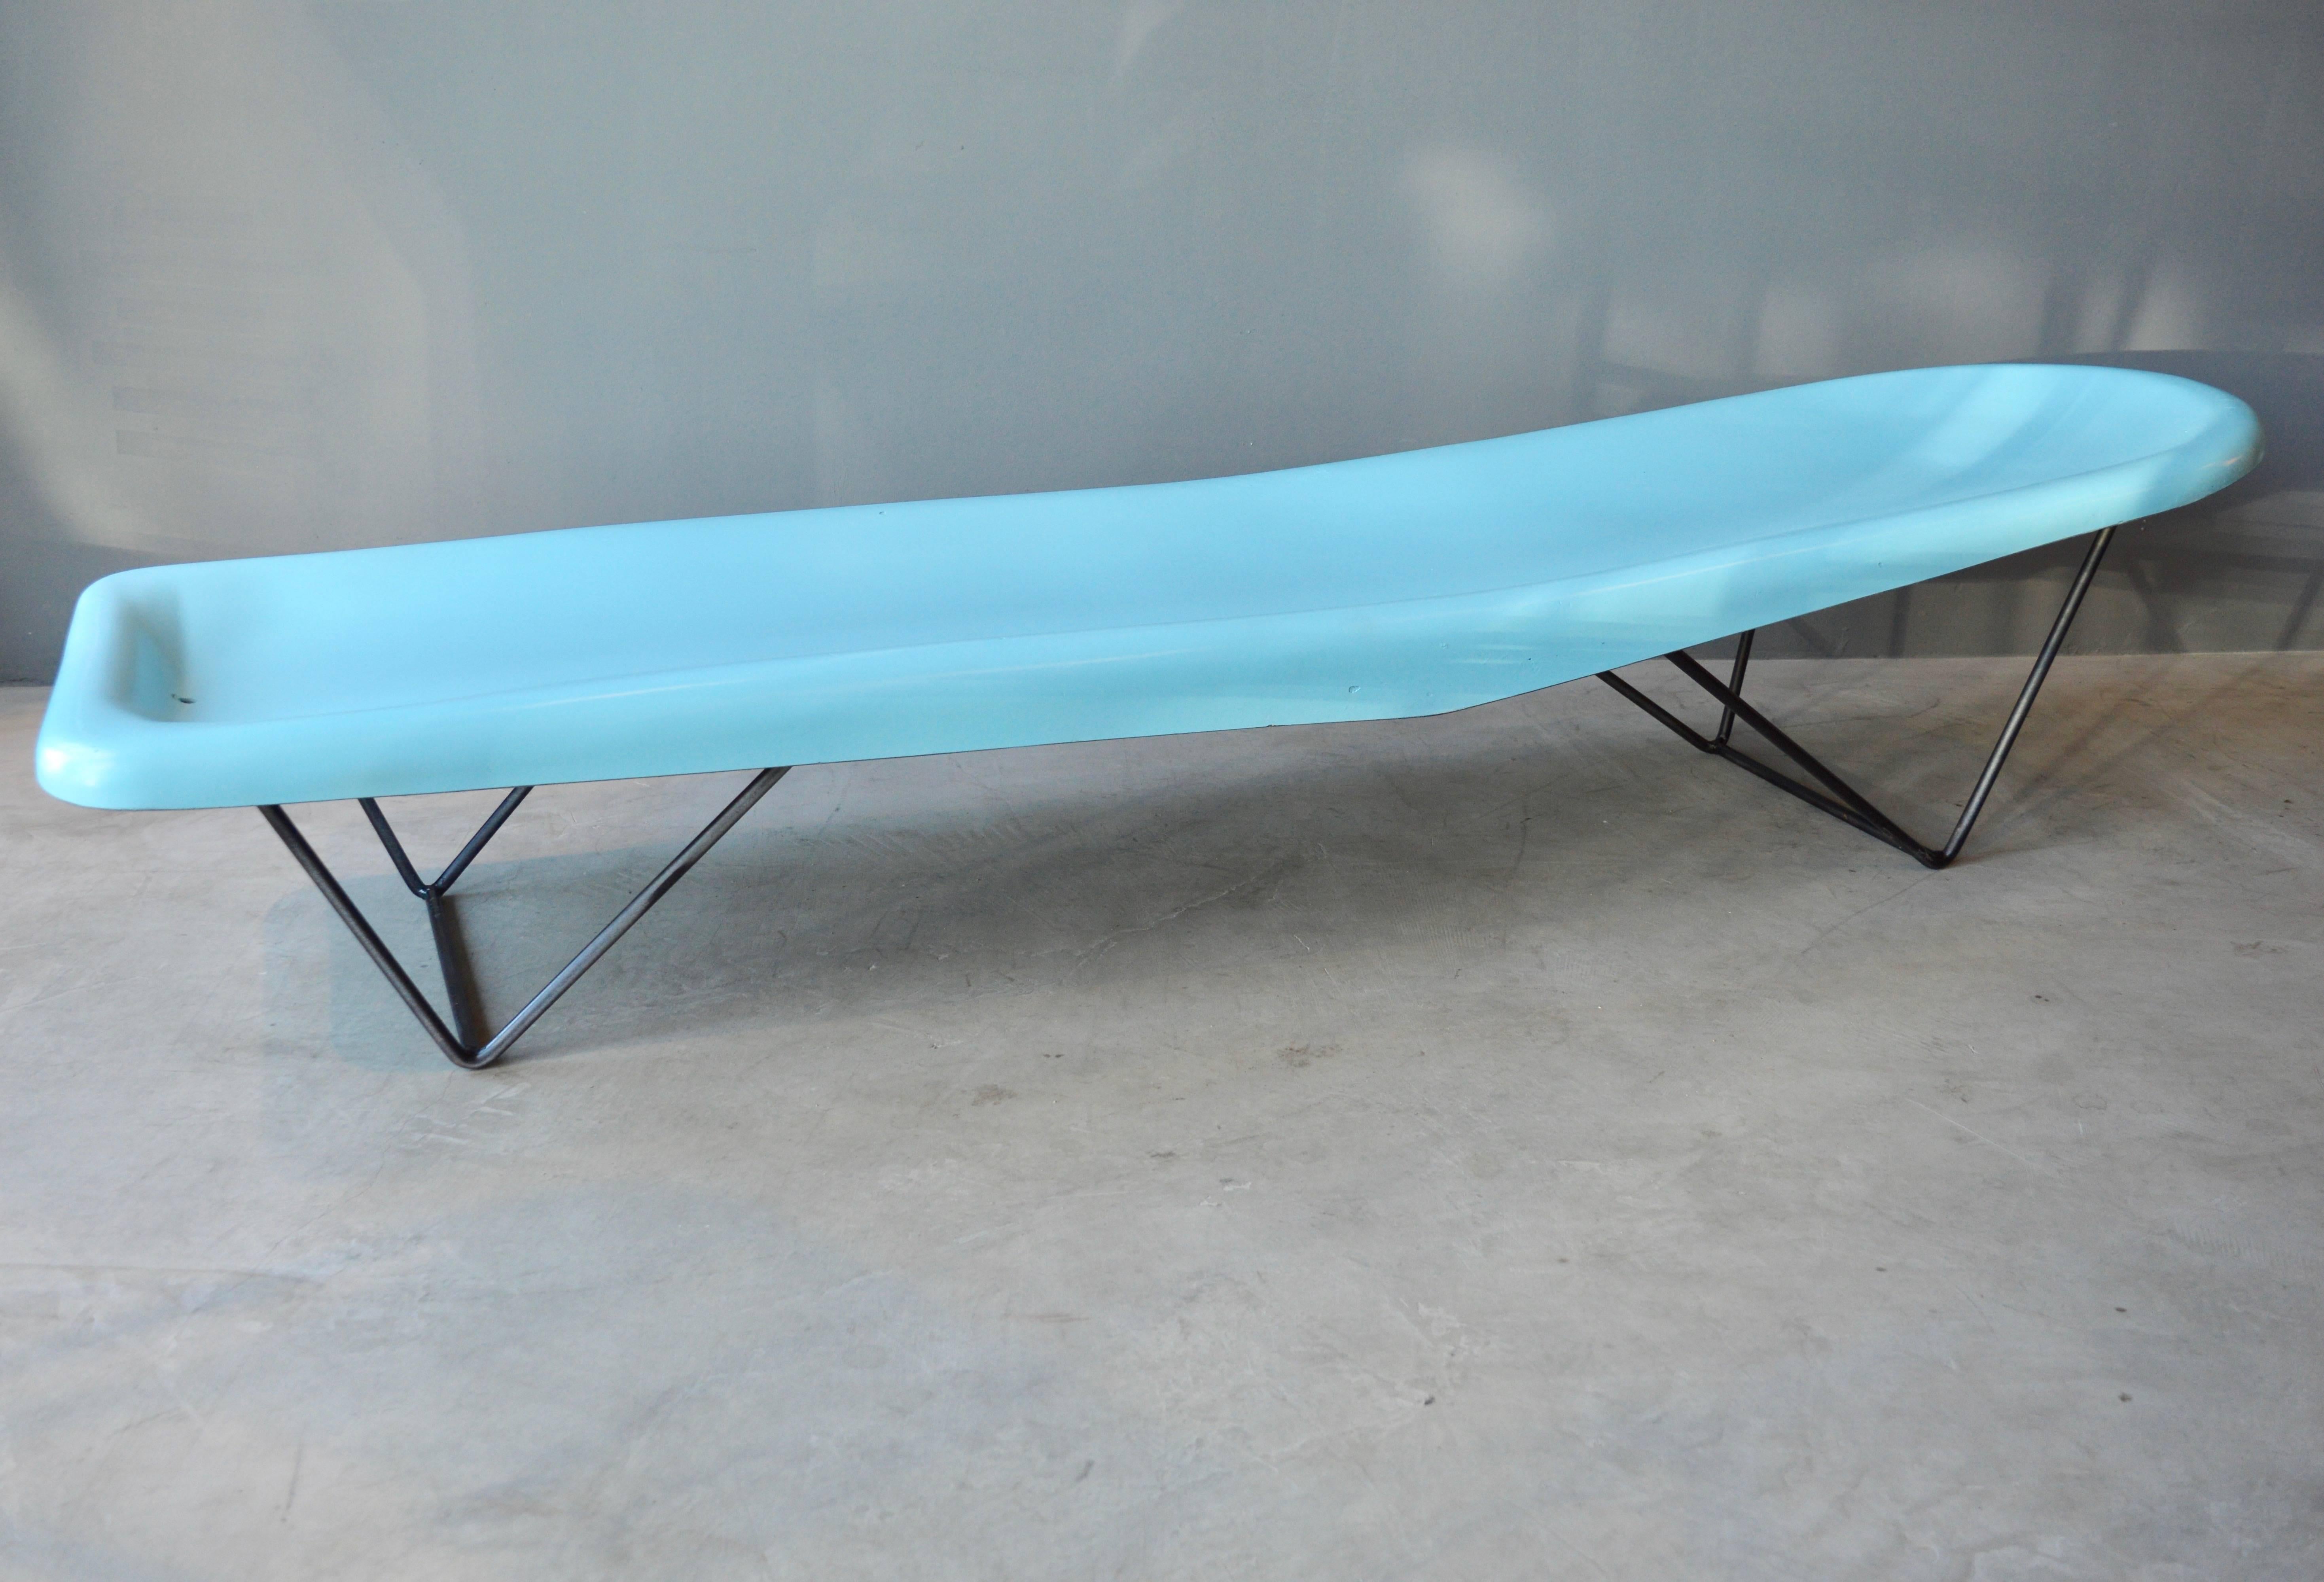 Une capsule temporelle étonnante de deux chaises longues en fibre de verre de couleur aqua par Fibrella. Fabriqué dans les années 1950. Parfait pour un bord de piscine Mid-Century. Base en fer architecturale. Excellent état vintage. Couleur bleue